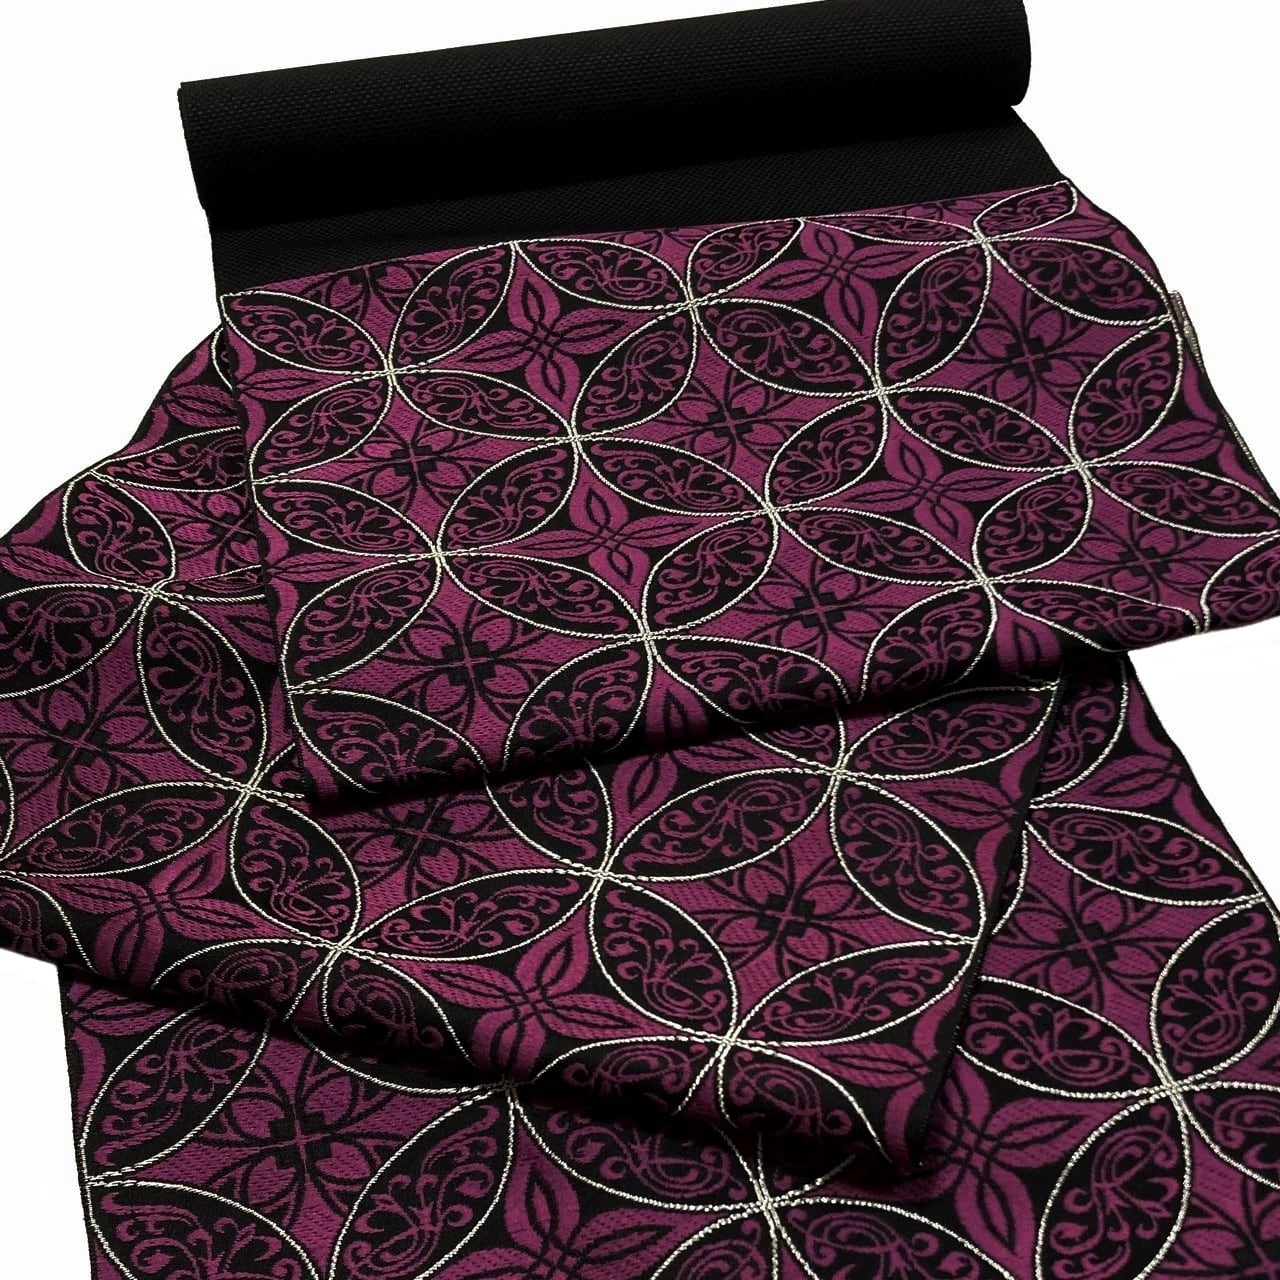 博多織 名古屋帯 華七宝 紫 八寸帯 正絹 日本製 特選品 七宝 花菱 八寸